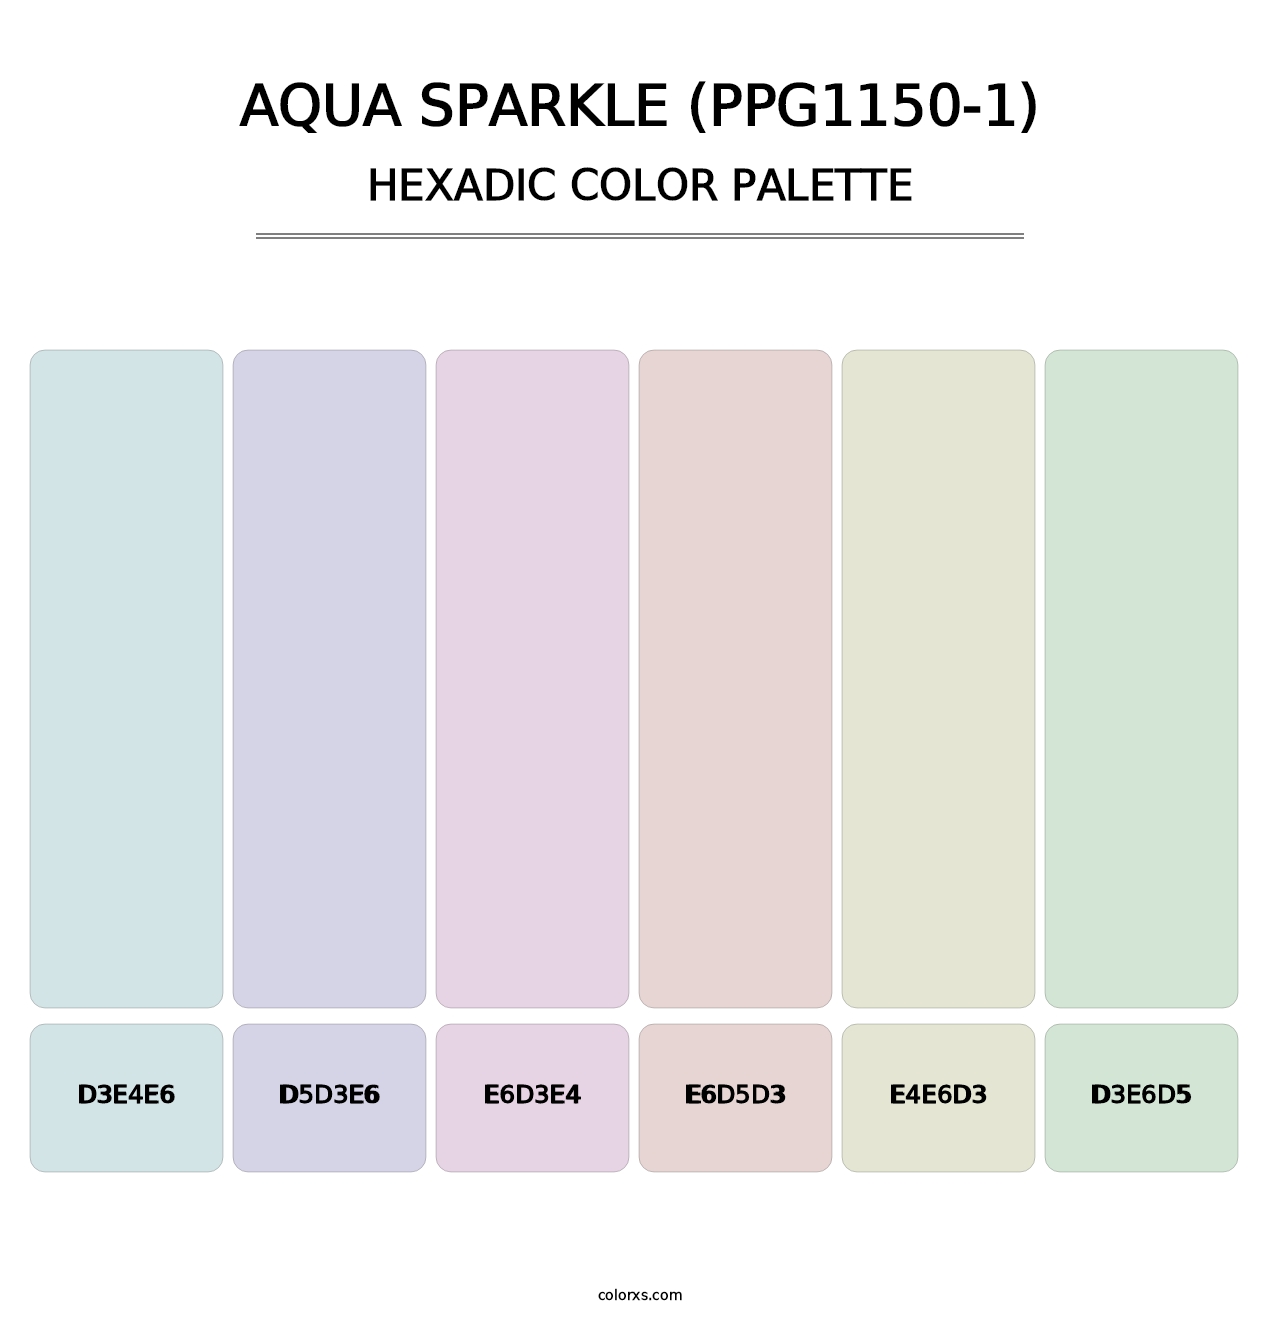 Aqua Sparkle (PPG1150-1) - Hexadic Color Palette